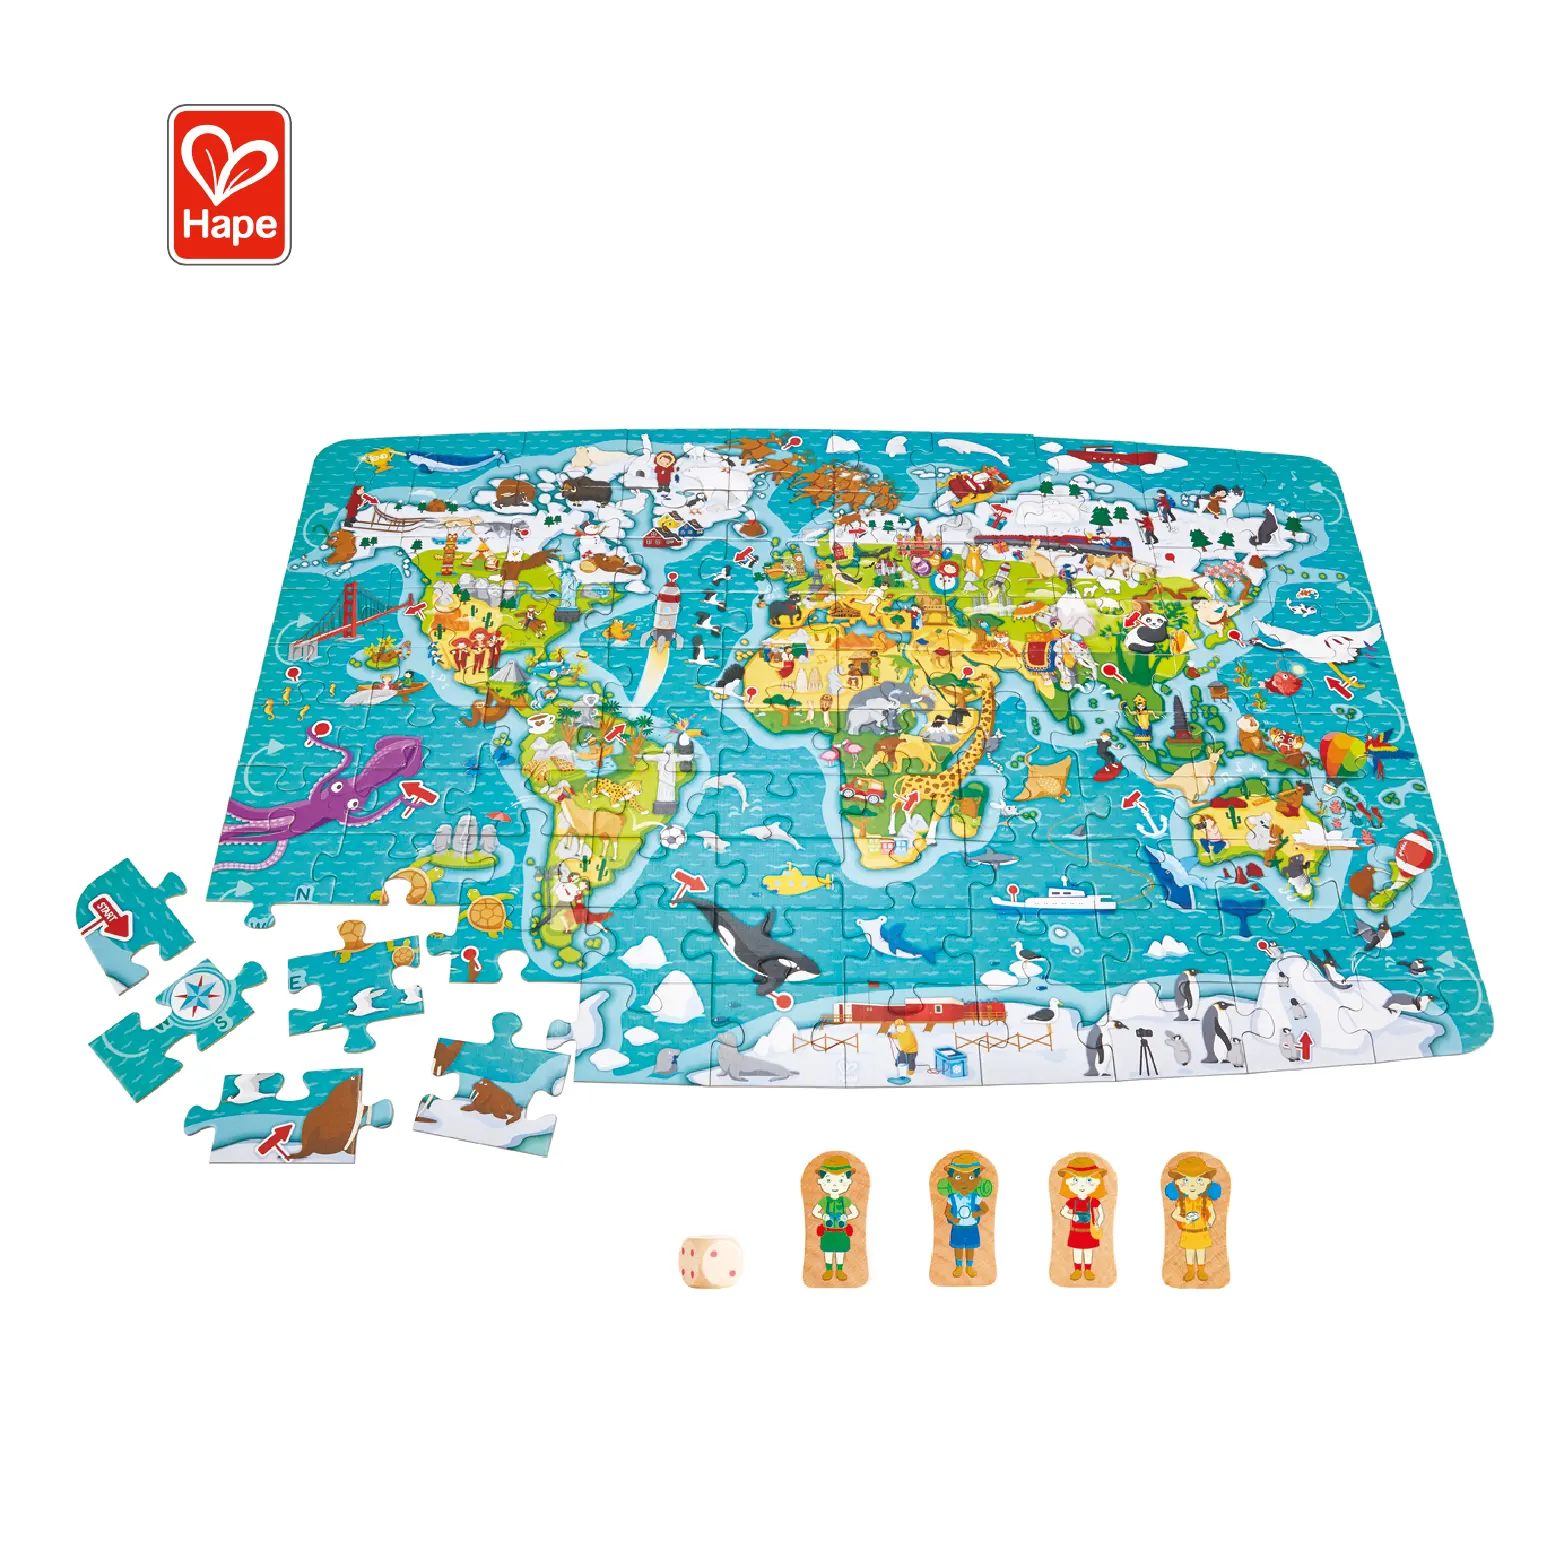 New Hot kinder pädagogisches laser World Map spielen spiel spielzeug holz puzzle für kinder